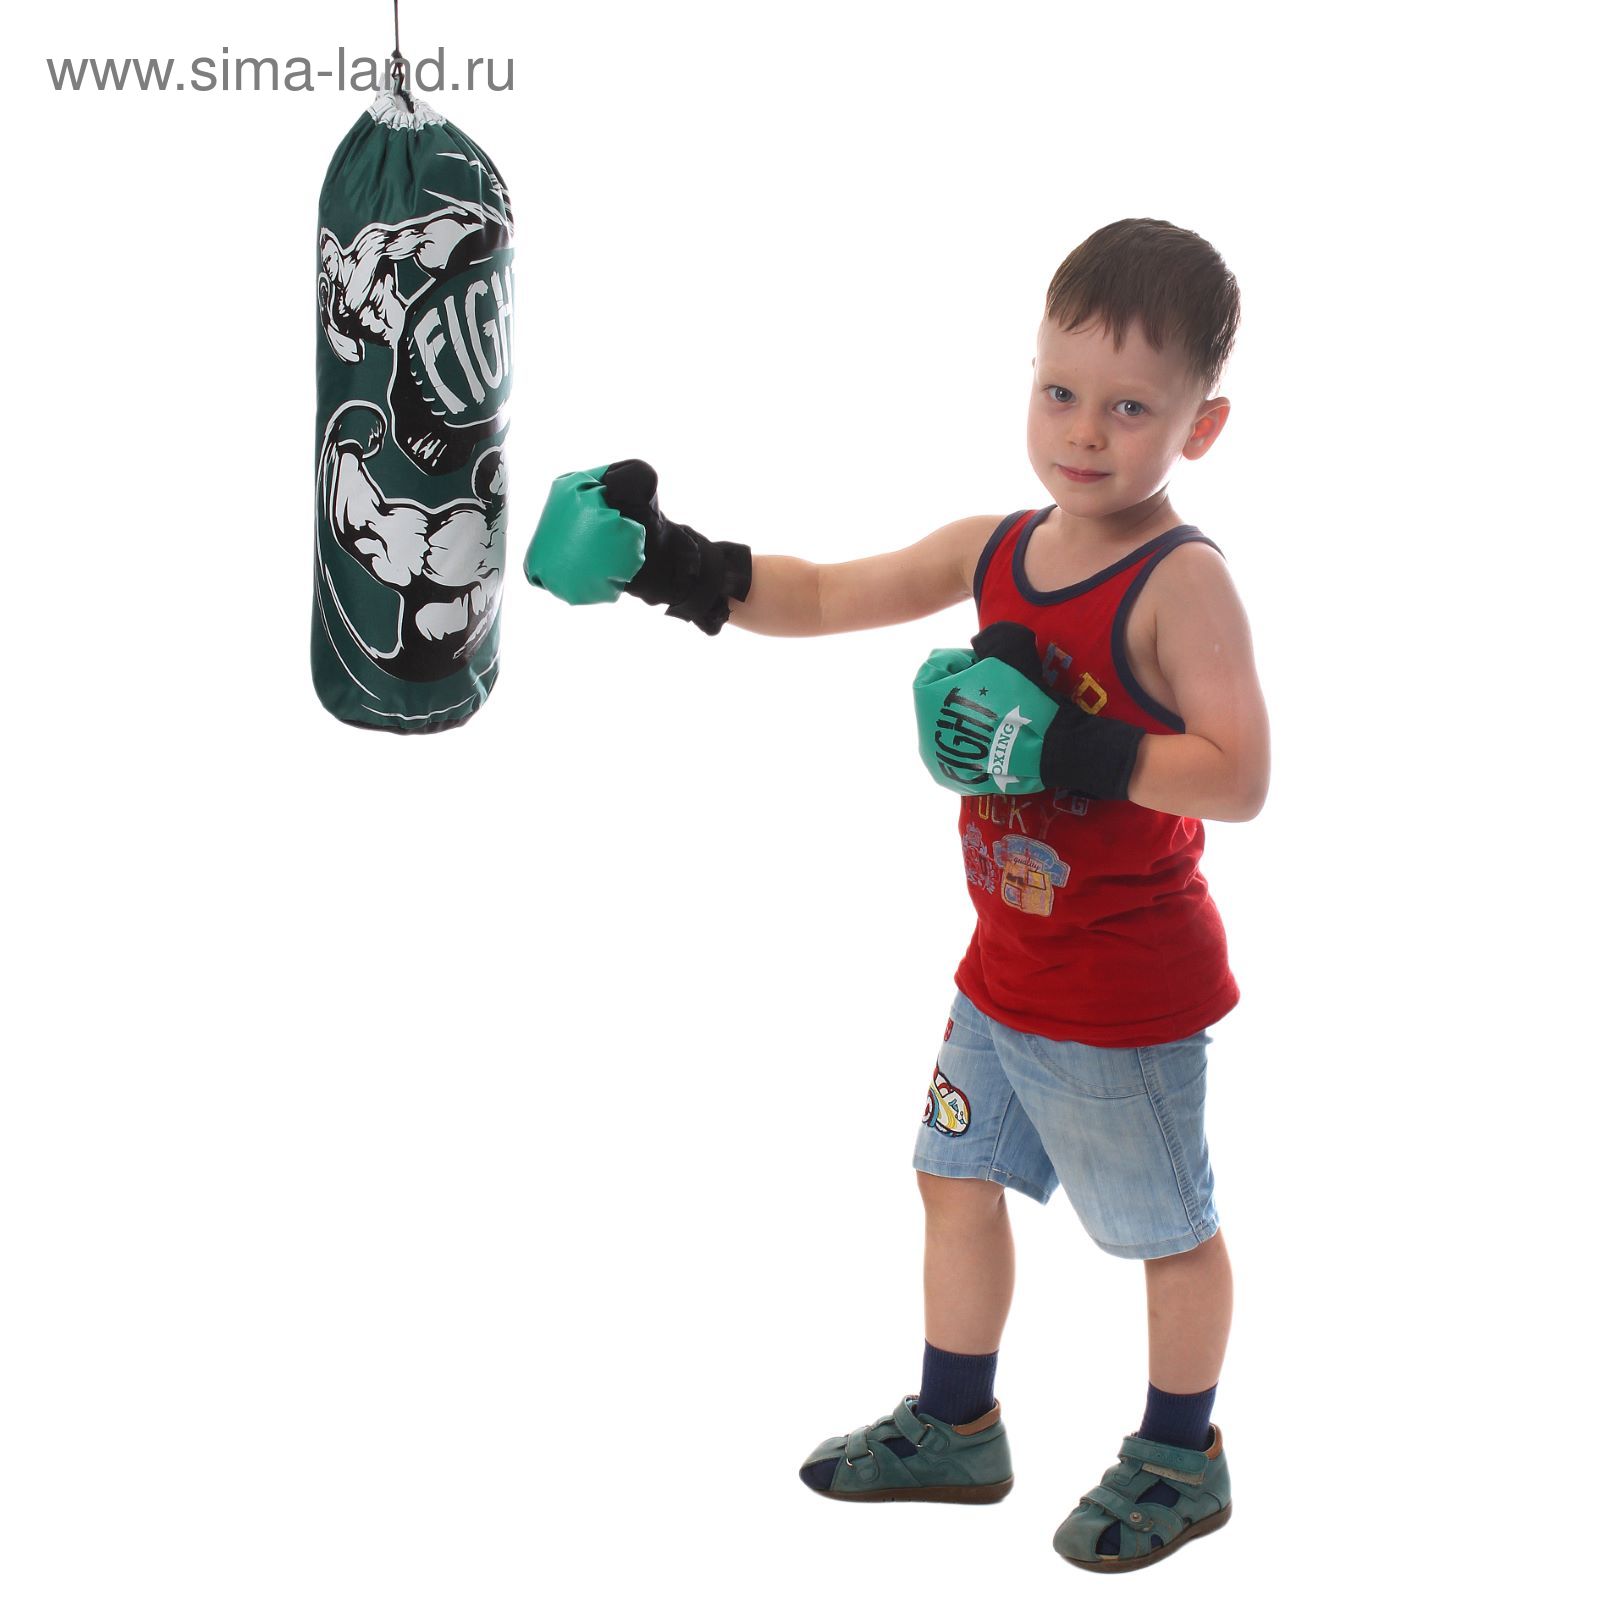 Ребенок для битья мужское. Груша боксерская файт. Игровой набор бокс bb136. Детские груши для бокса. Комплект для бокса детский груша.